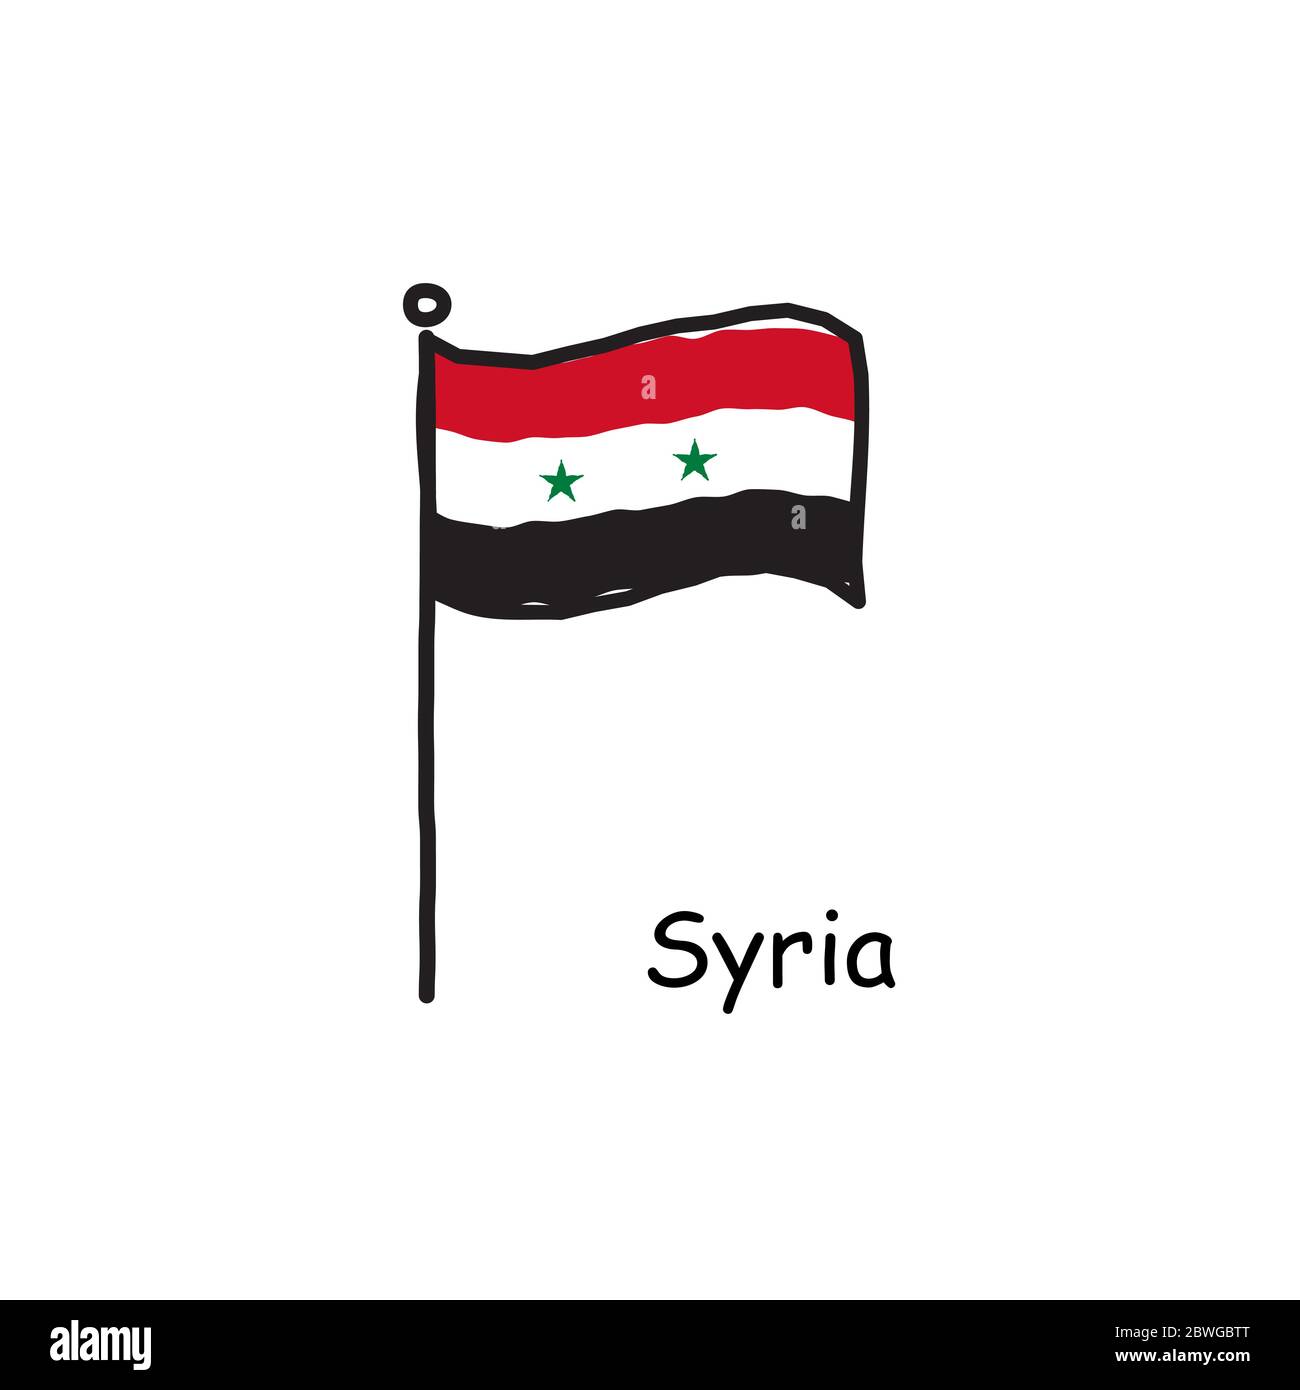 Syria Flag, Stock vector